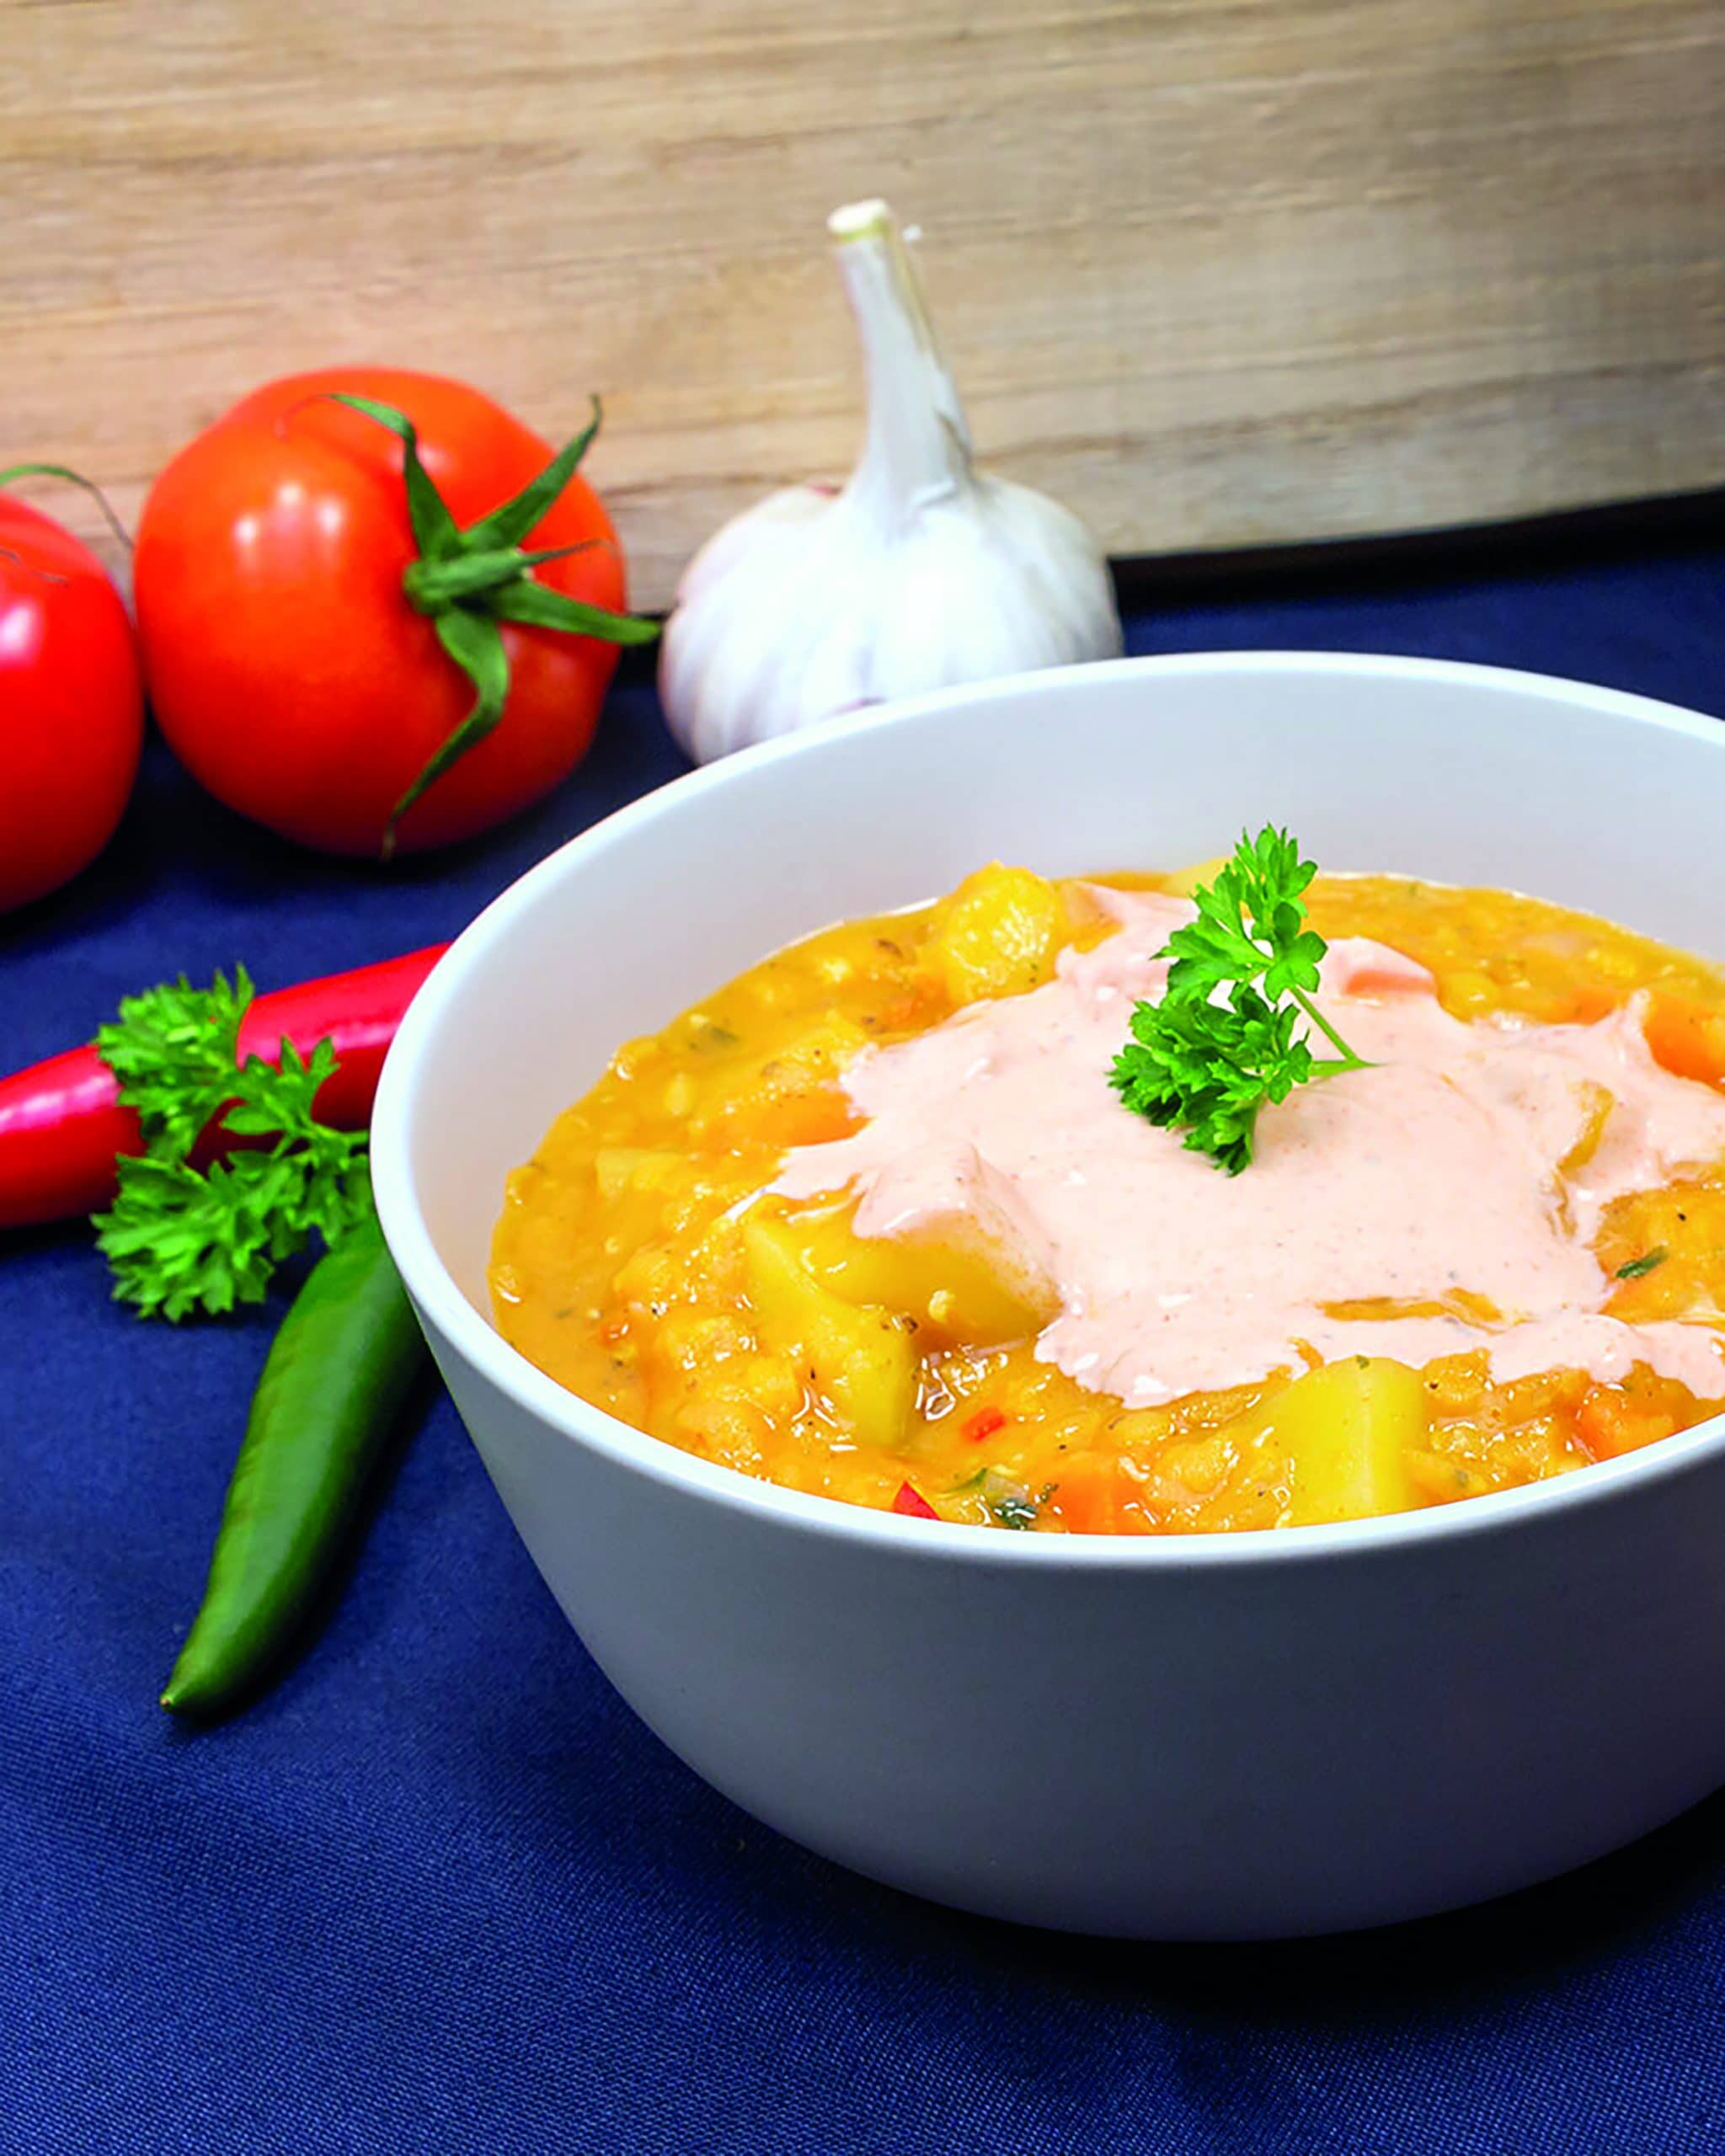 Potato and red lentil soup Photo: © KMG/die-kartoffel.de